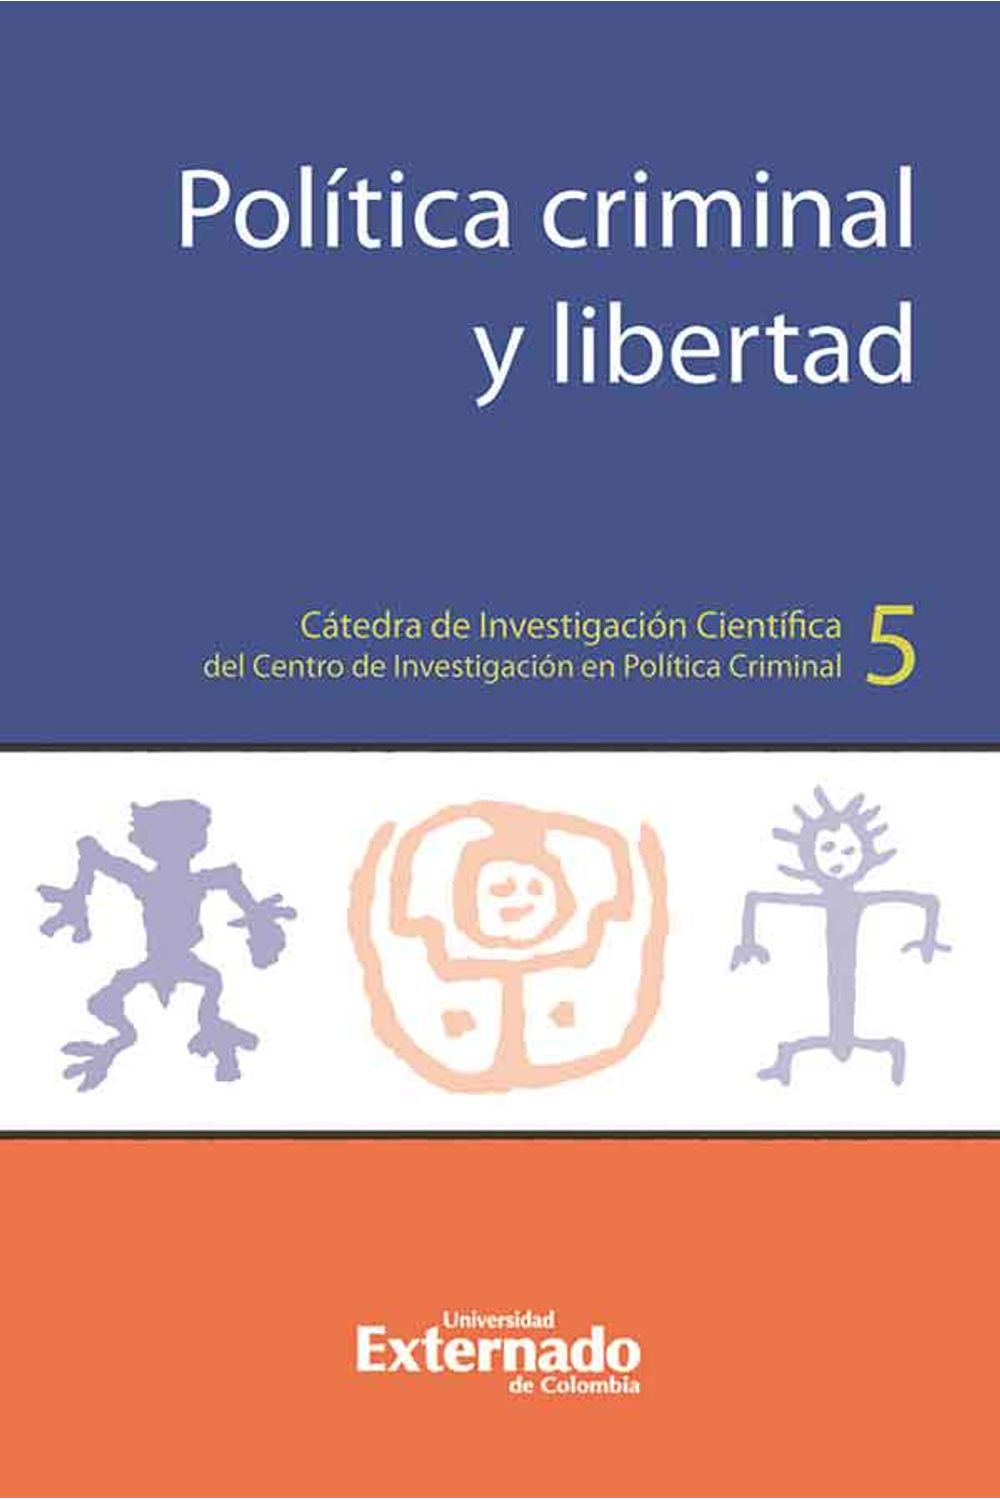 bw-poliacutetica-criminal-y-libertad-u-externado-de-colombia-9789587723212